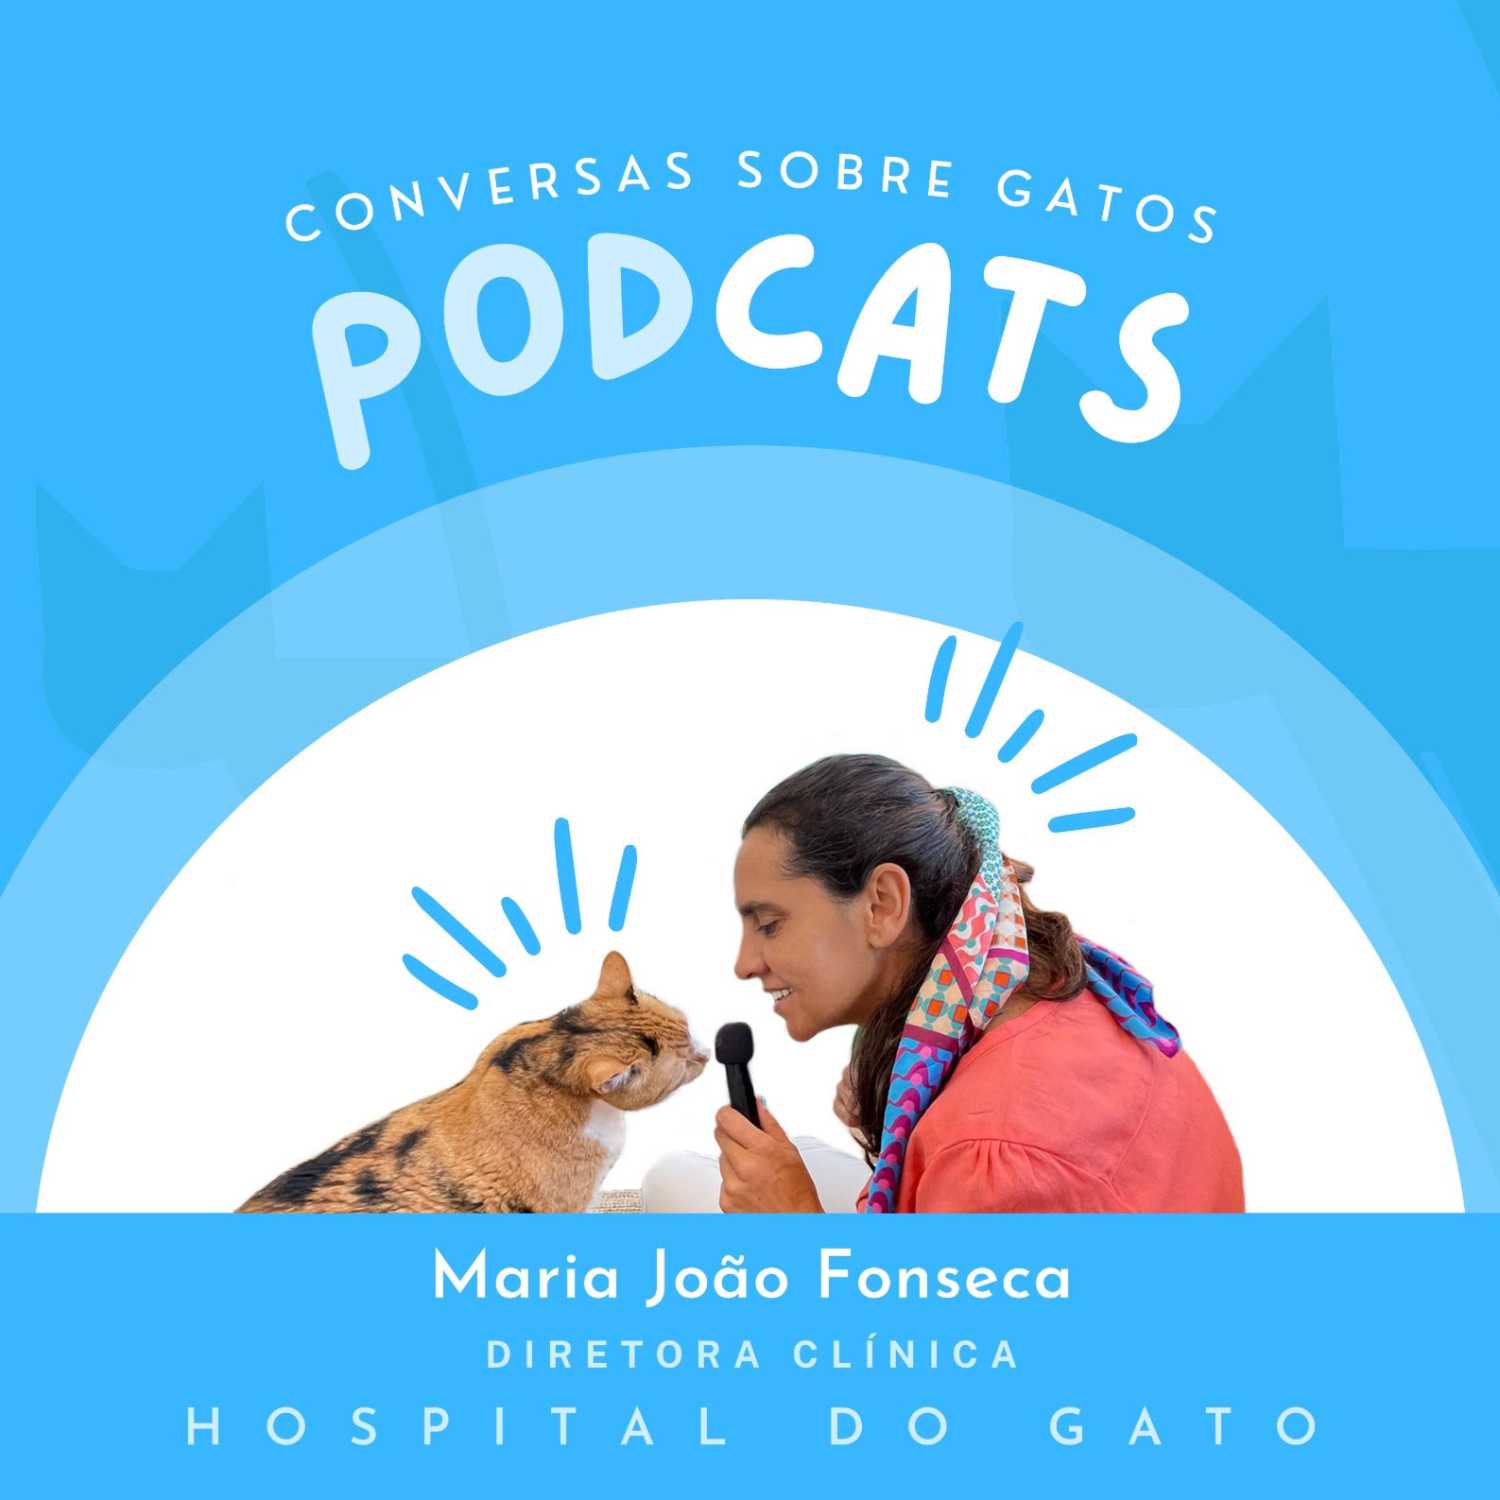 Grupo Hospital do Gato – Conversas sobre GATOS